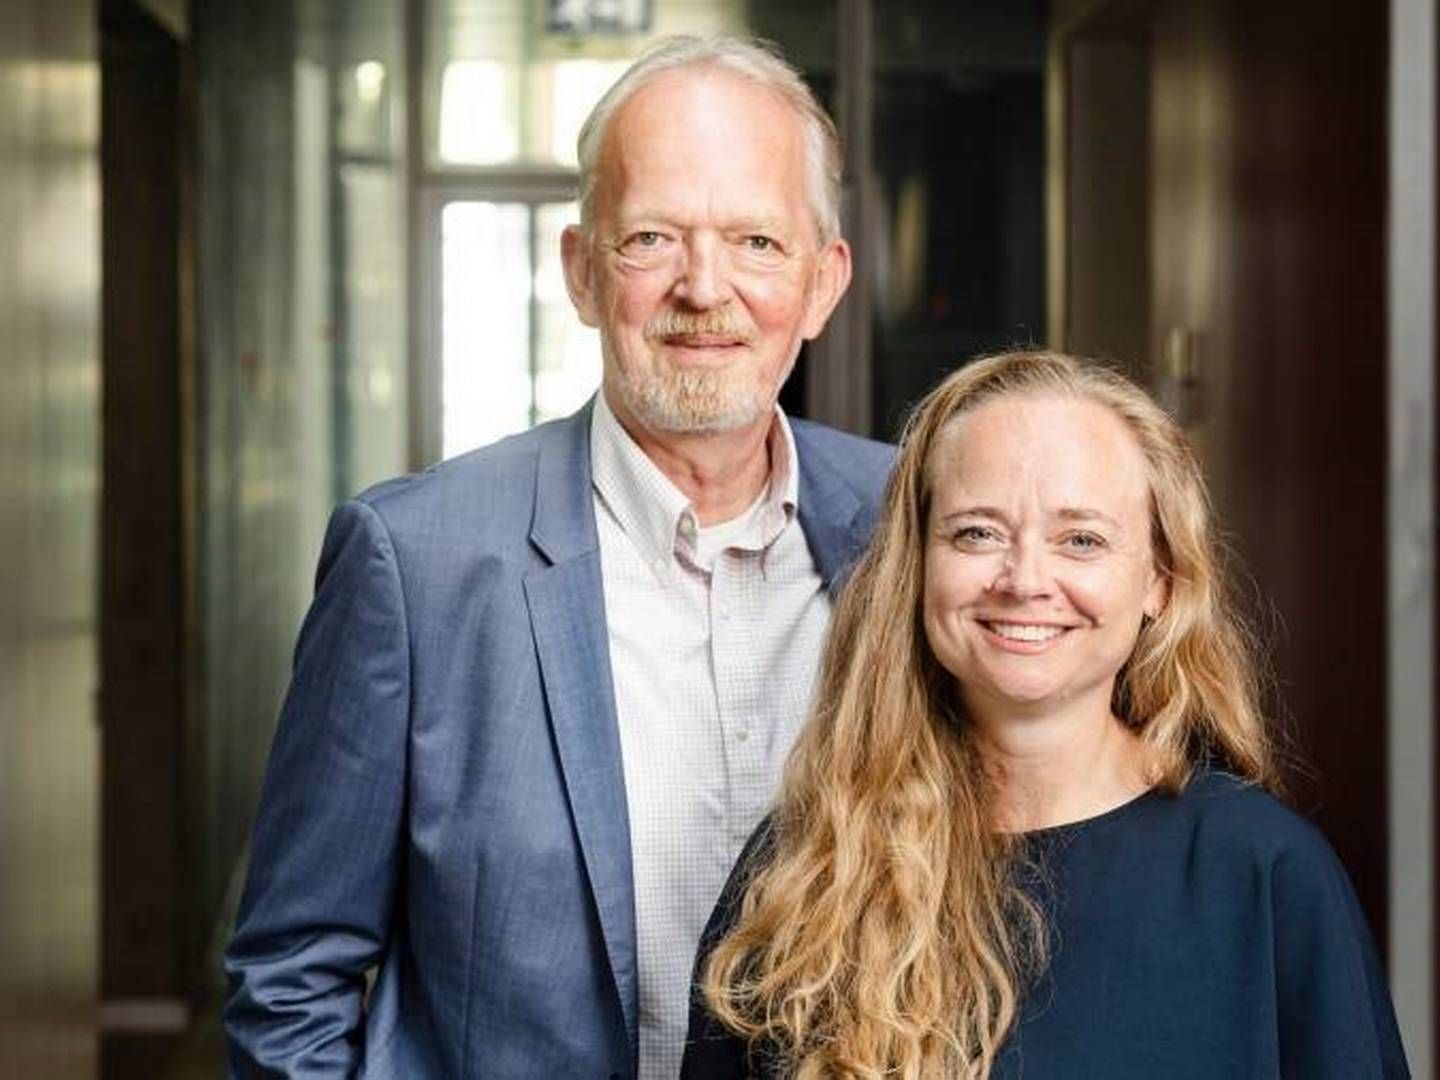 DR’s direktør for Kultur, Børn og Unge Henrik Bo Nielsen og Rie Odsbjerg Werner, som er direktør i Trygfonden, som er en af samarbejdspartnerne på projektet. | Foto: Kristian Brasen